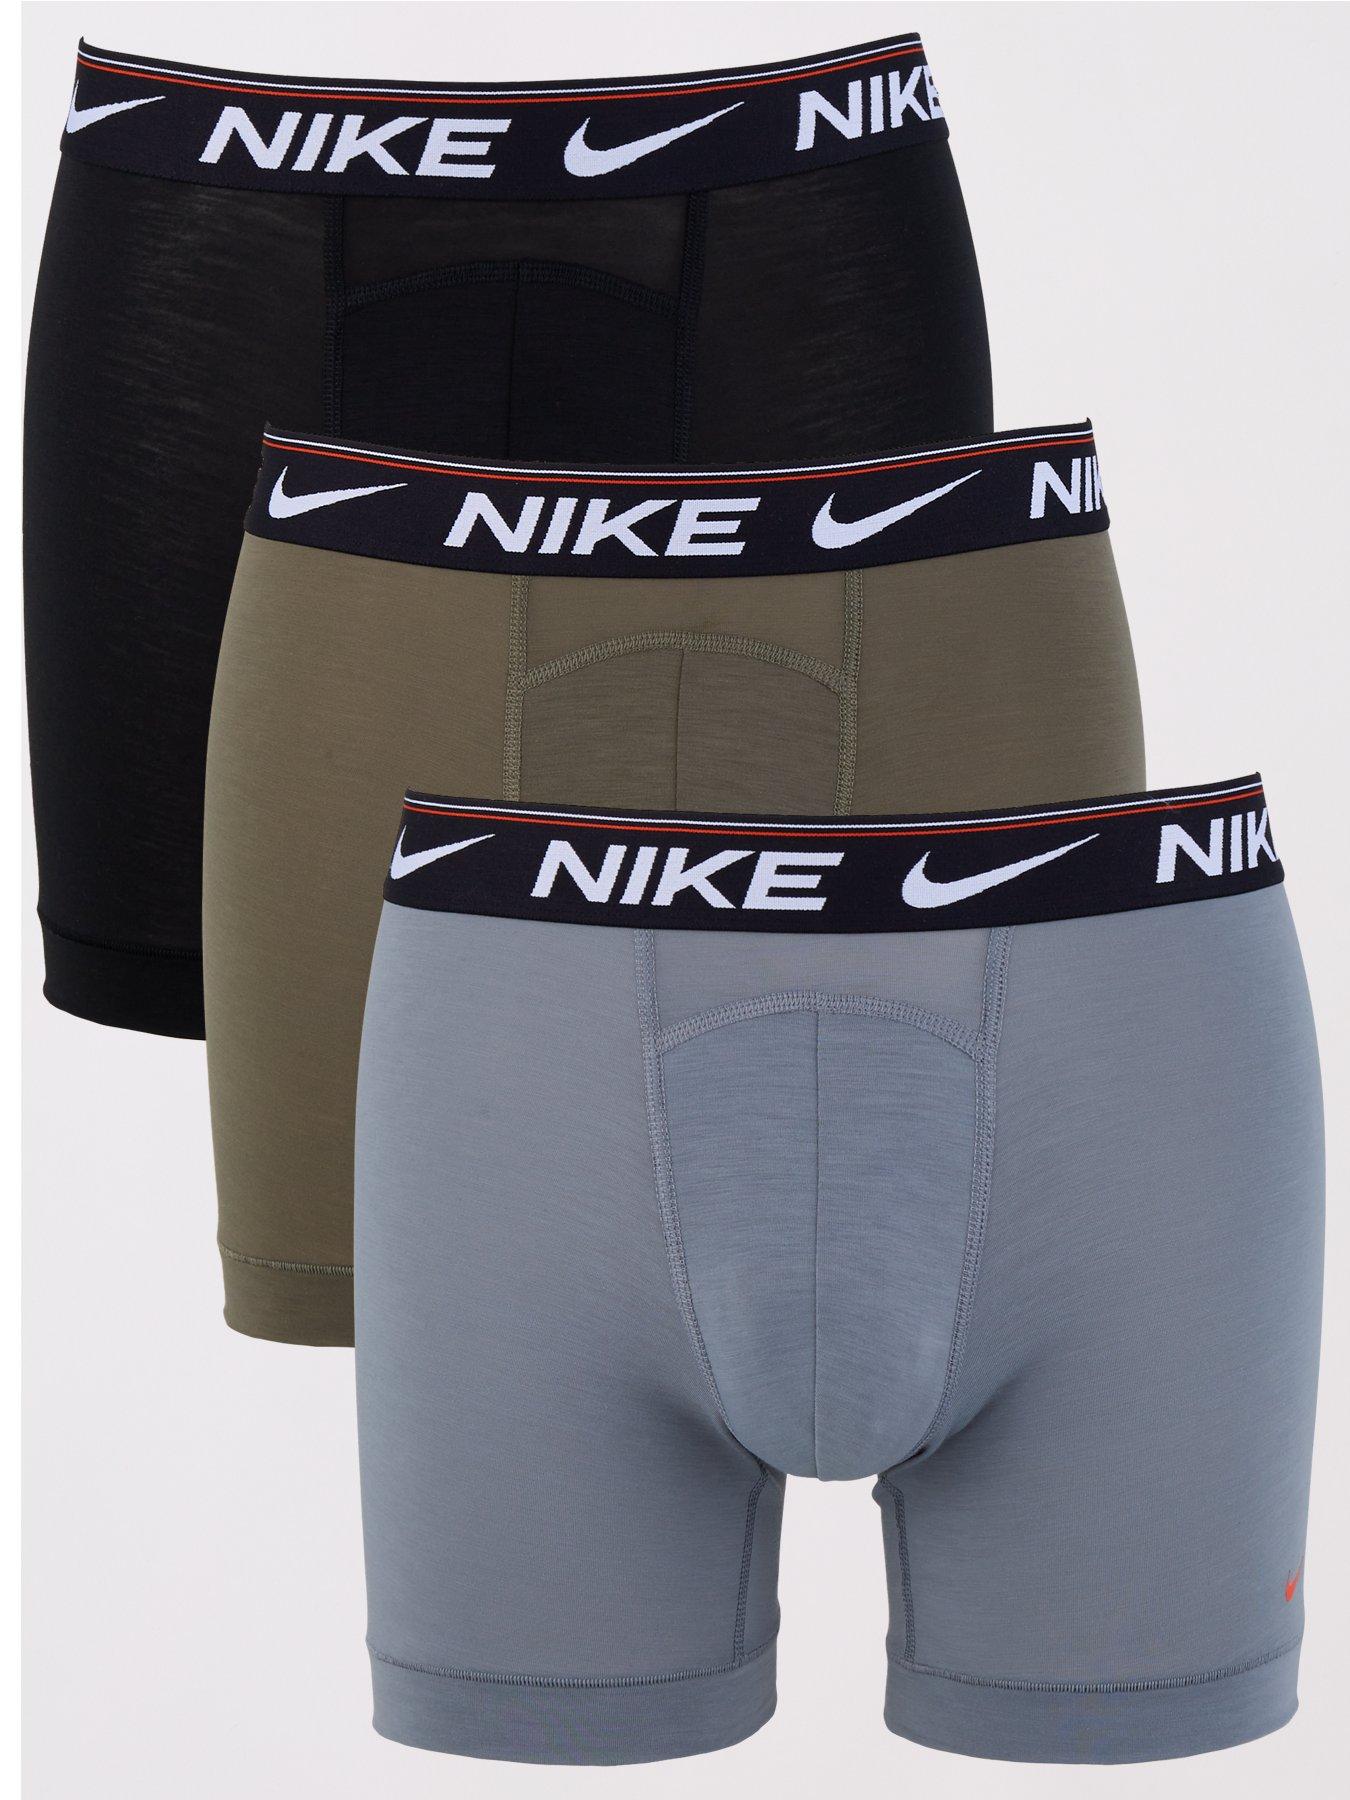 Nike Underwear Mens 3pk Briefs-black